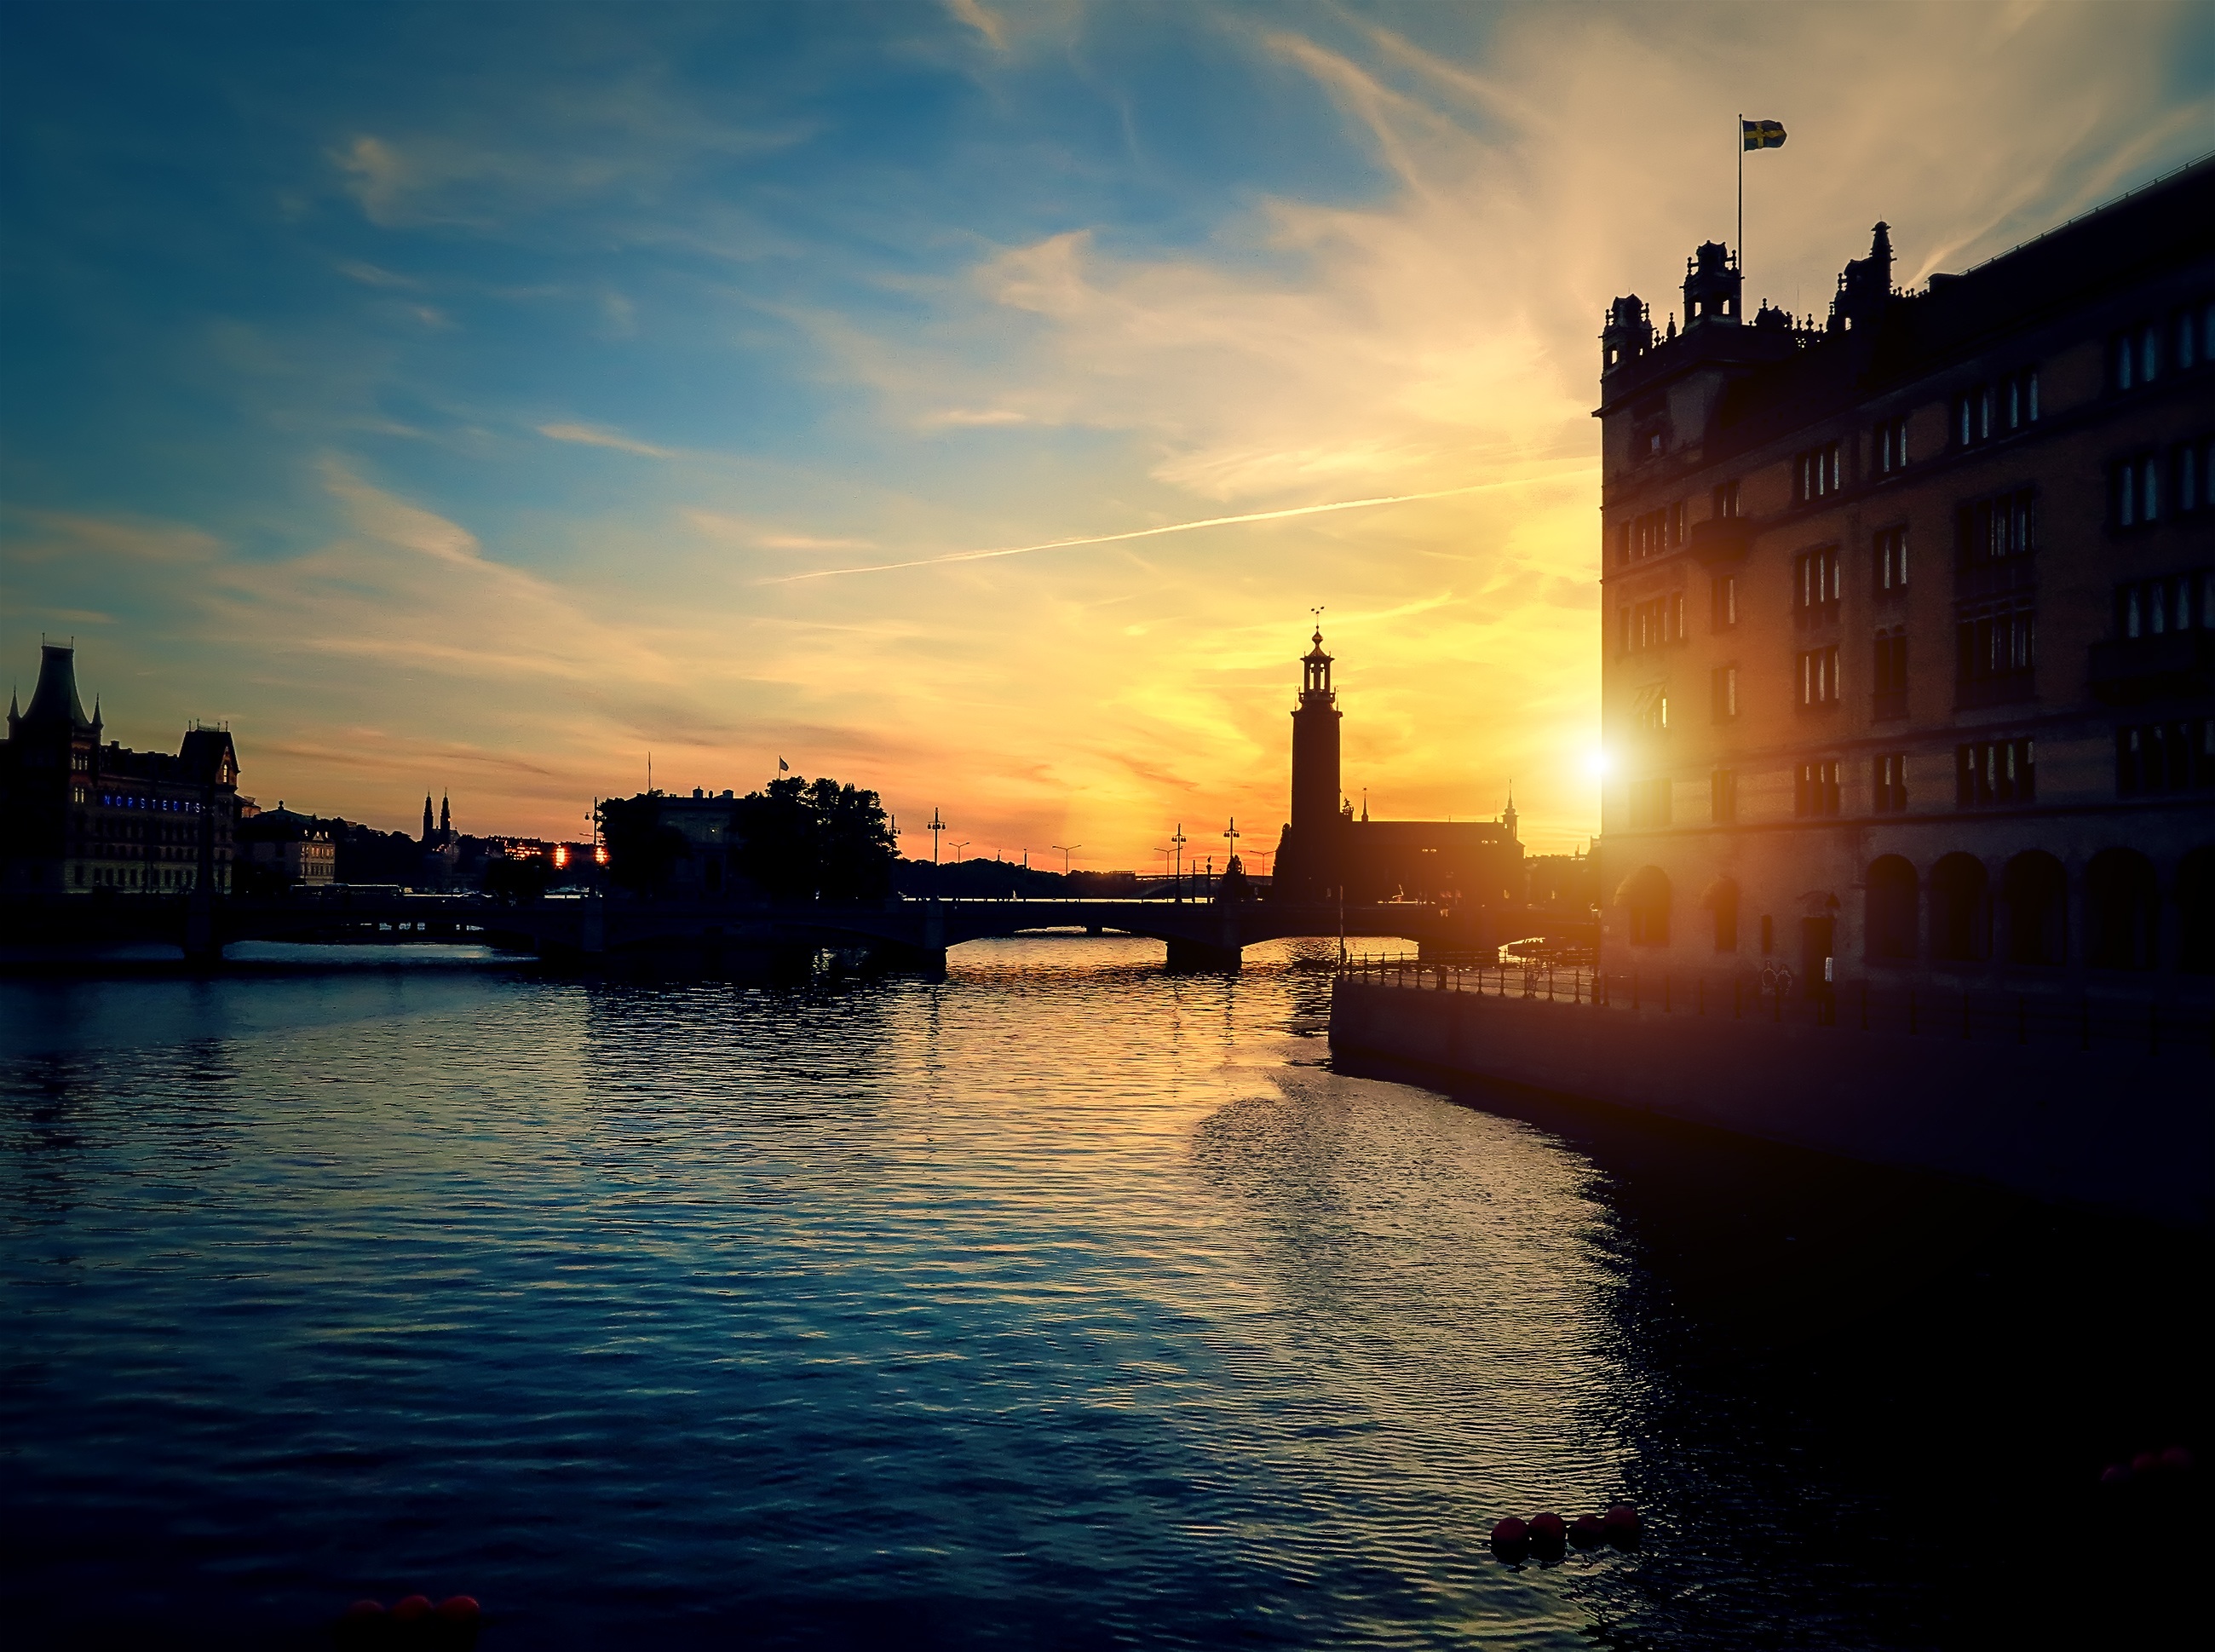 Sweden at sunset